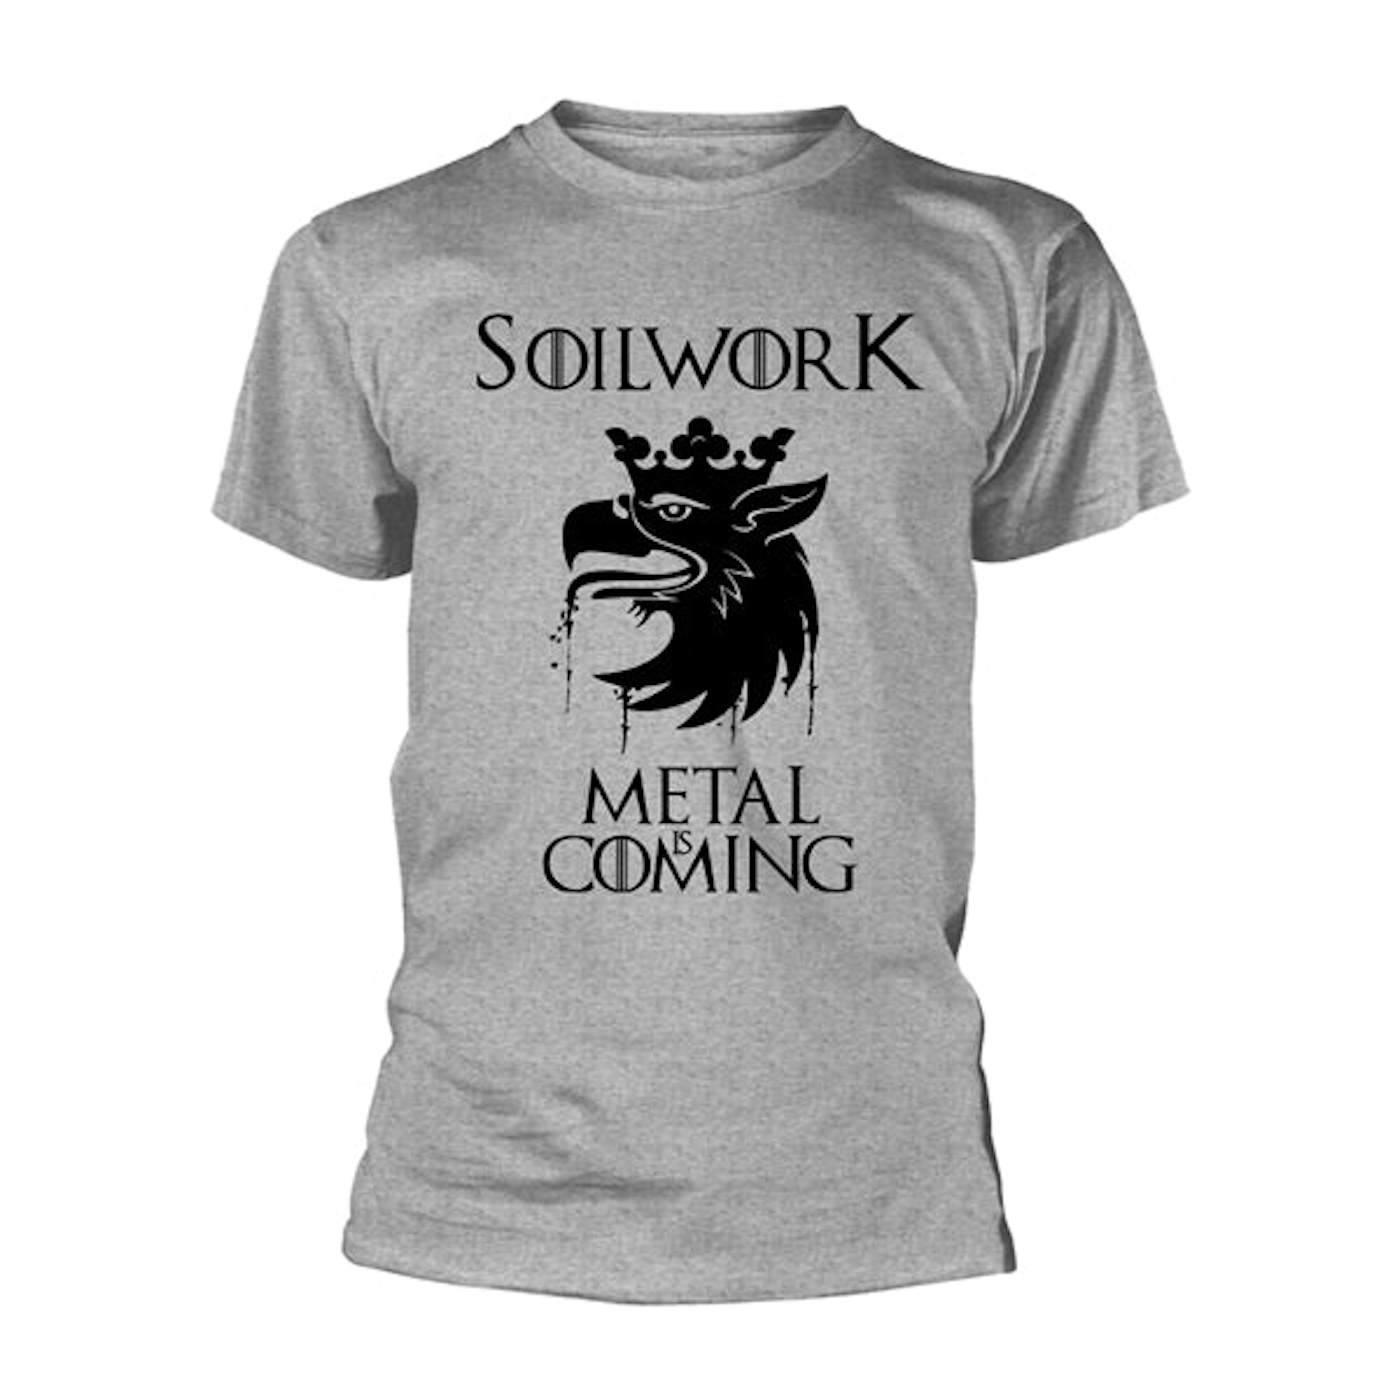 Soilwork T Shirt - Got